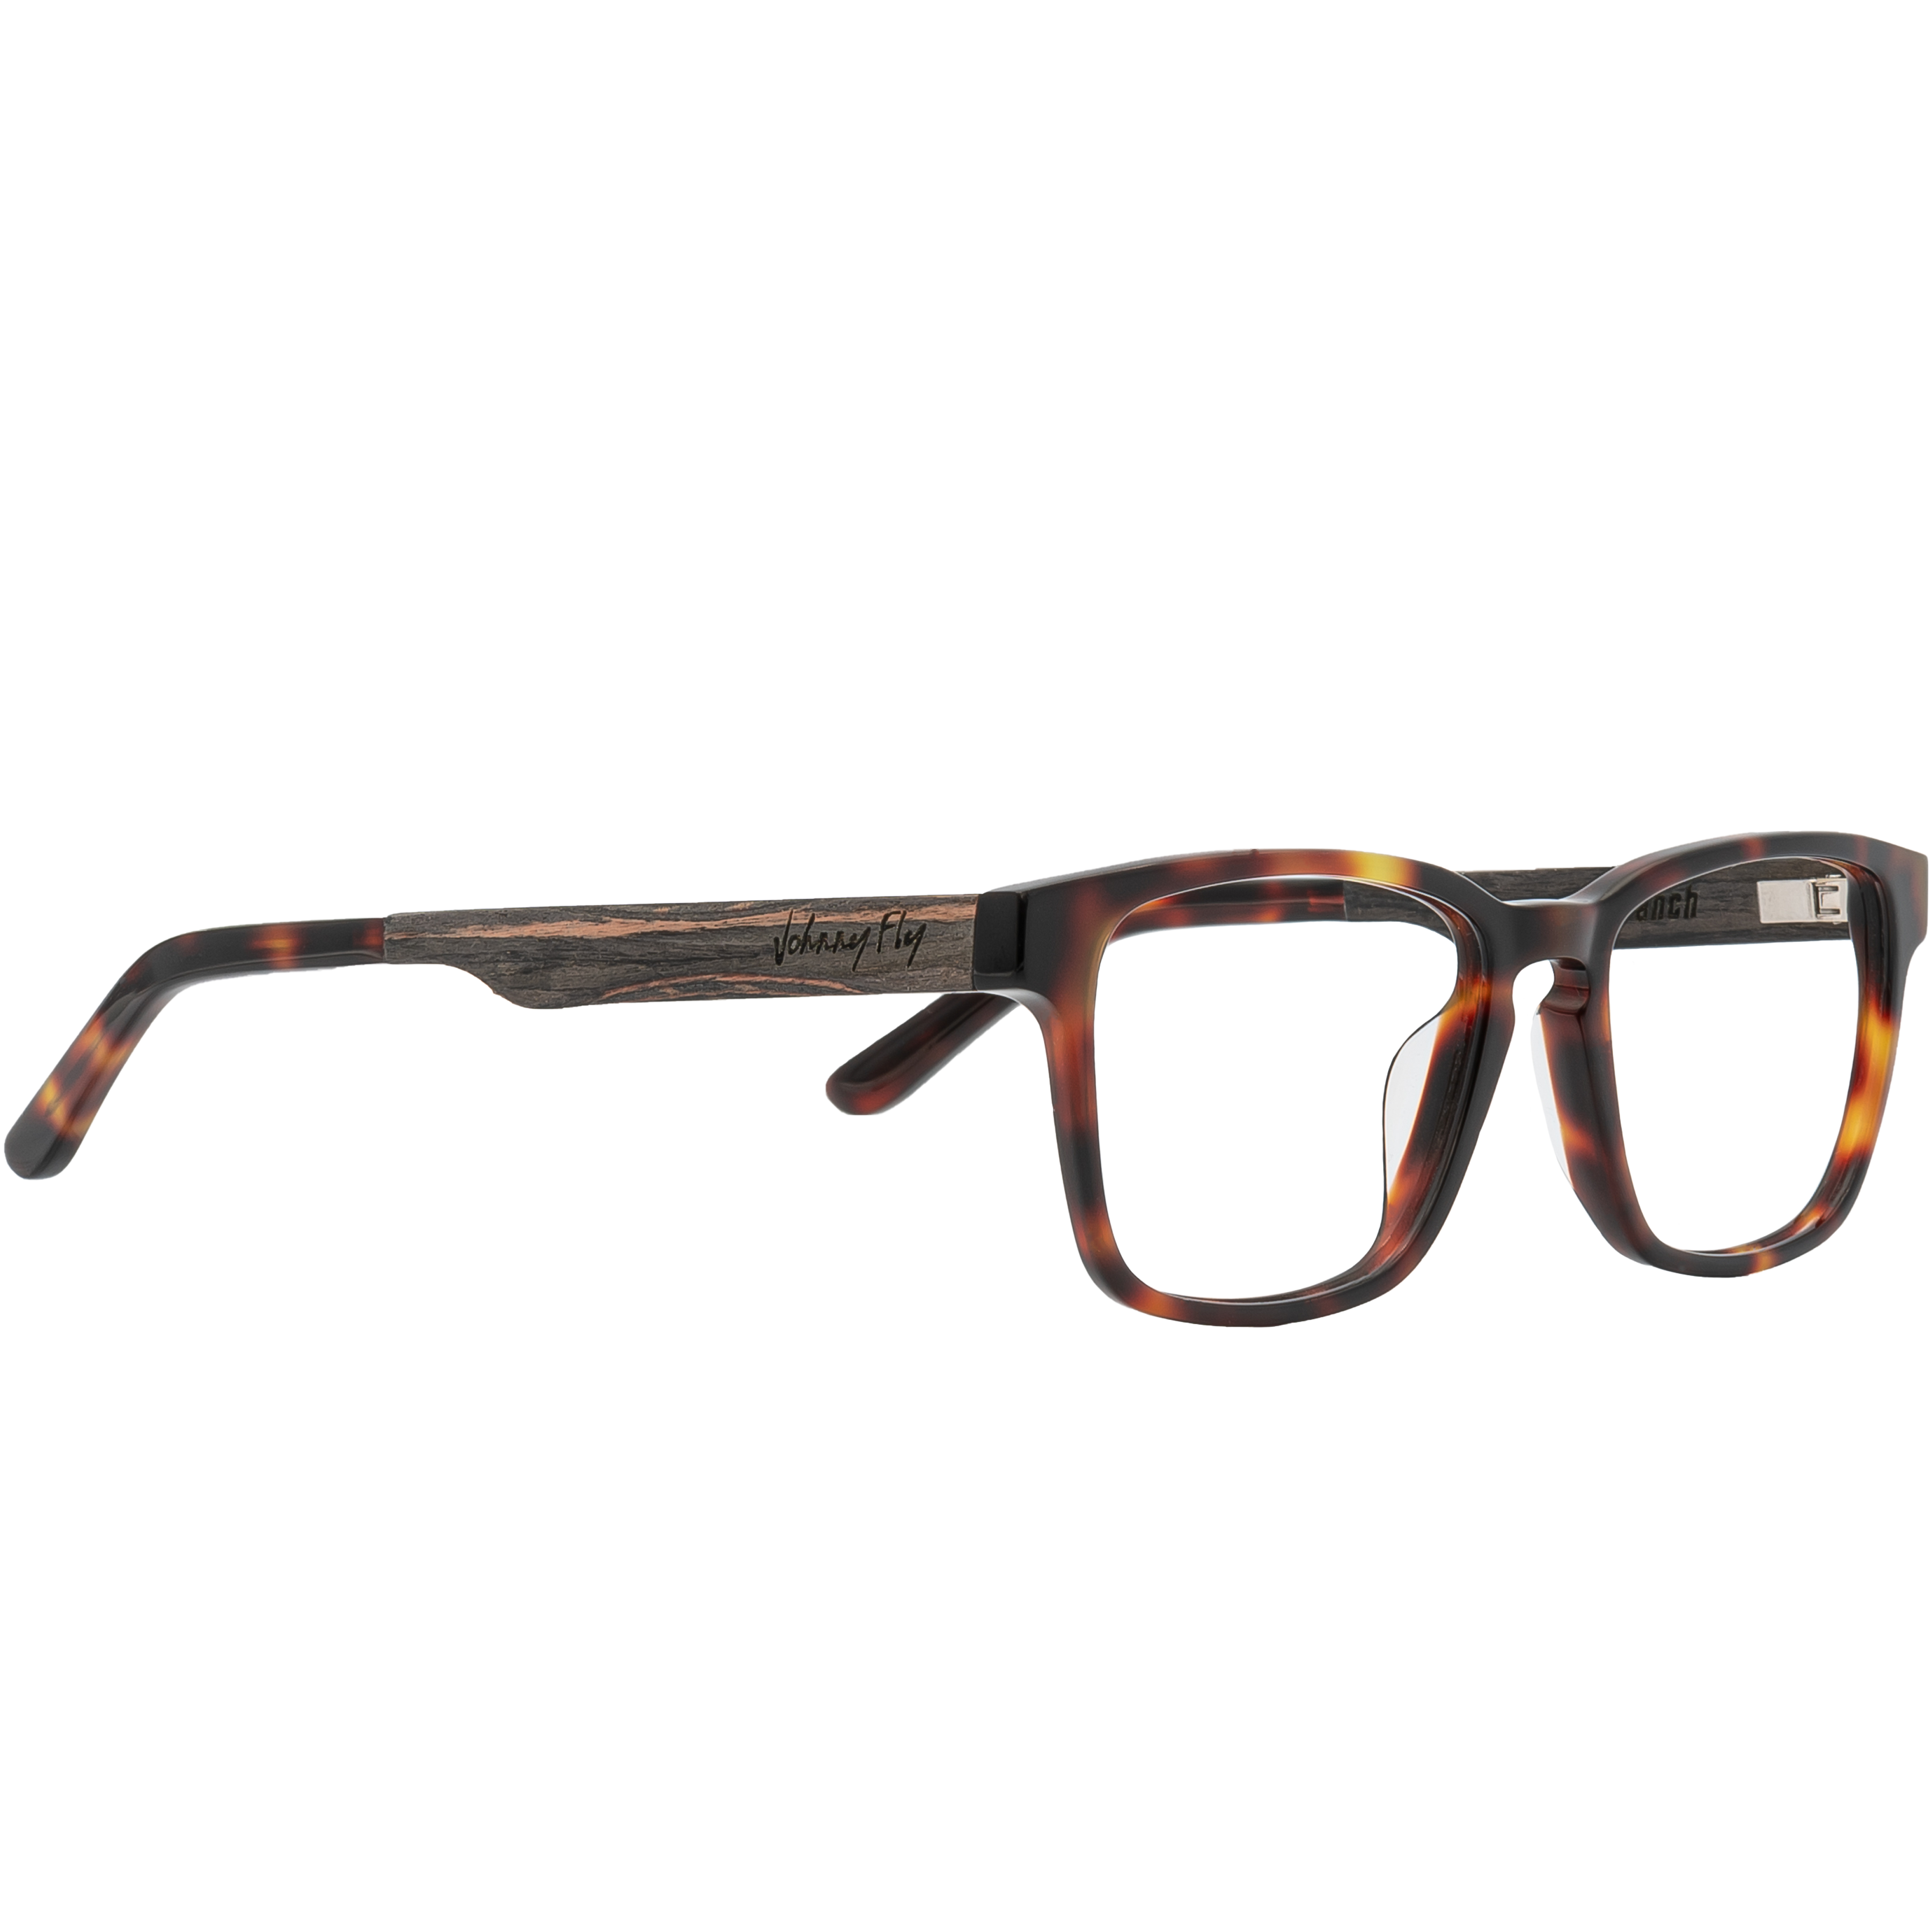 BRANCH Frame - Classic Tortoise - Eyeglasses Frame - Johnny Fly Eyewear | 